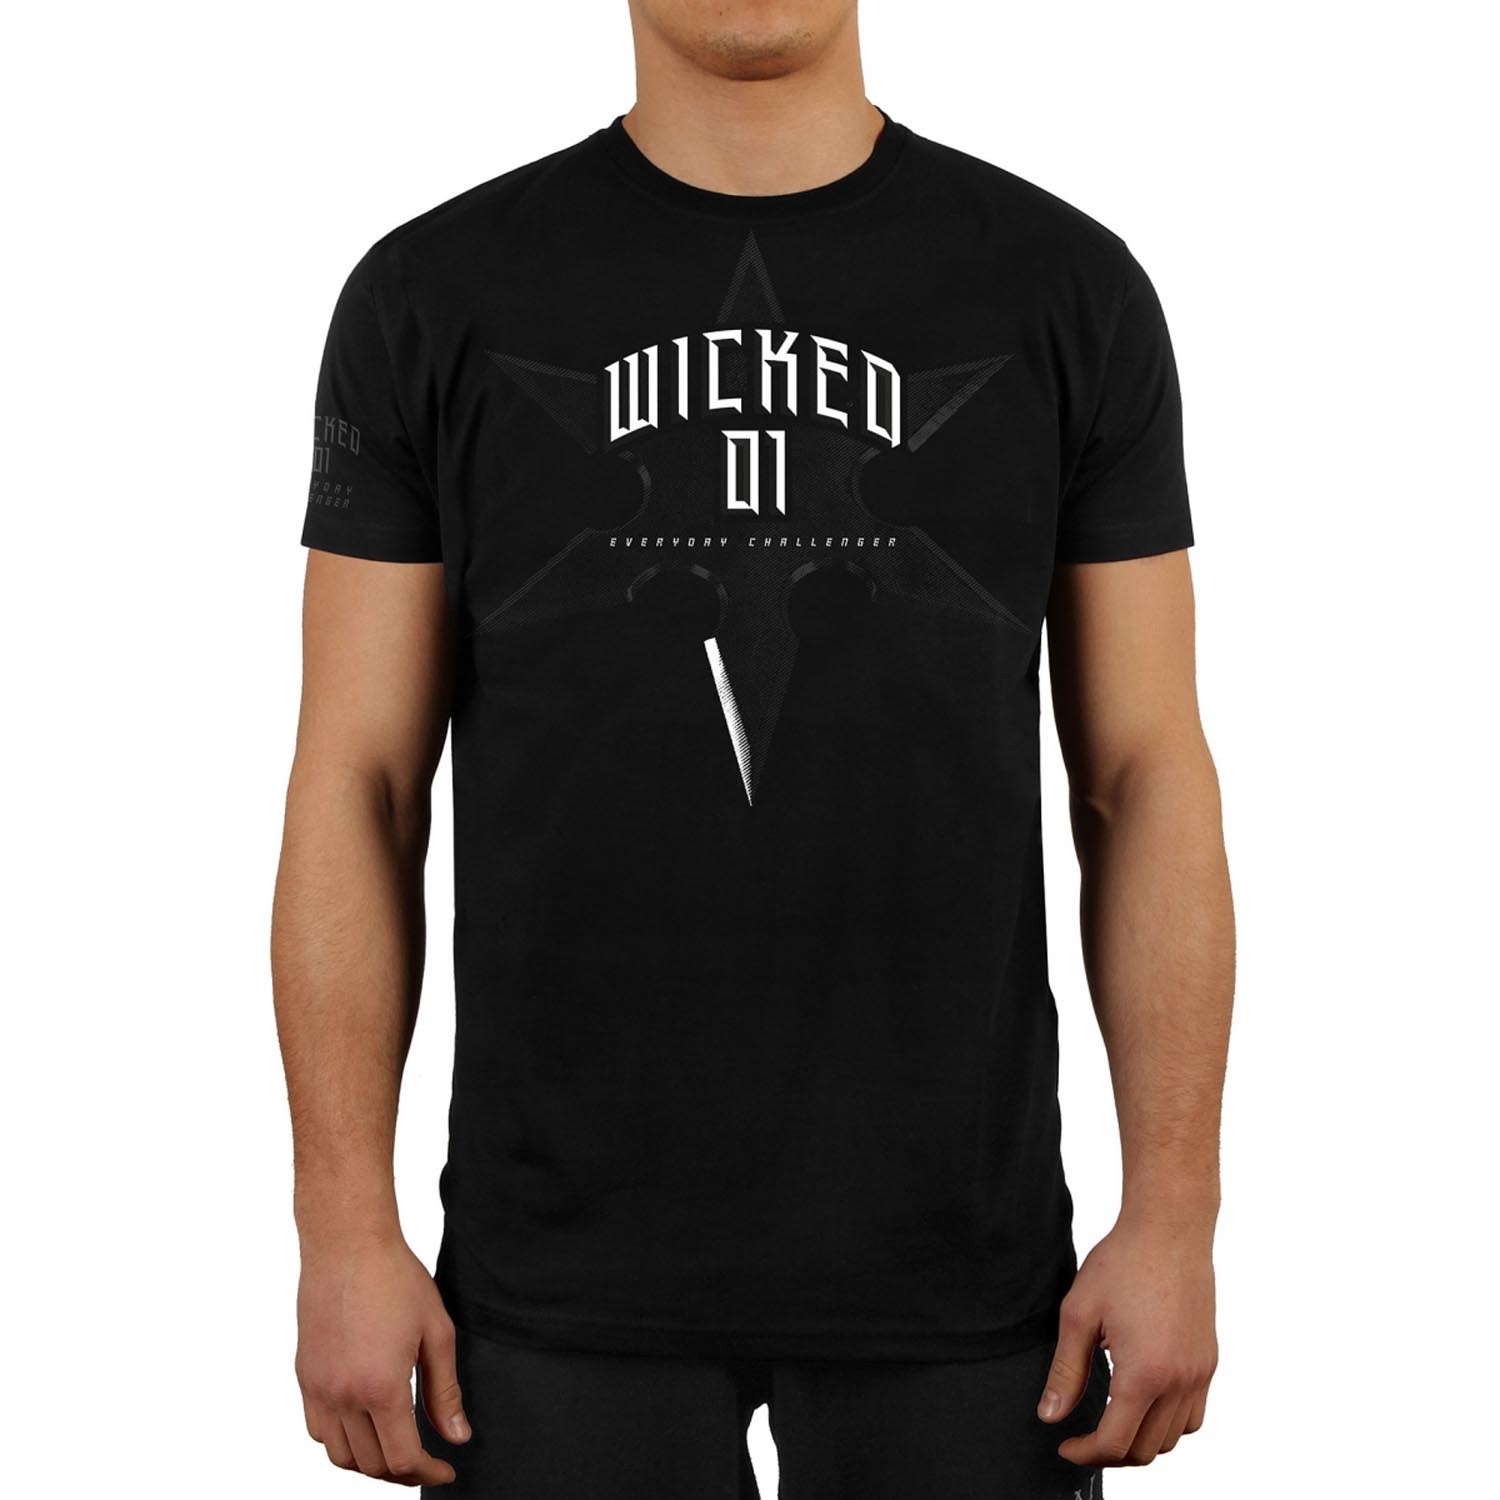 Wicked One T-Shirt, Shuriken, black, XL